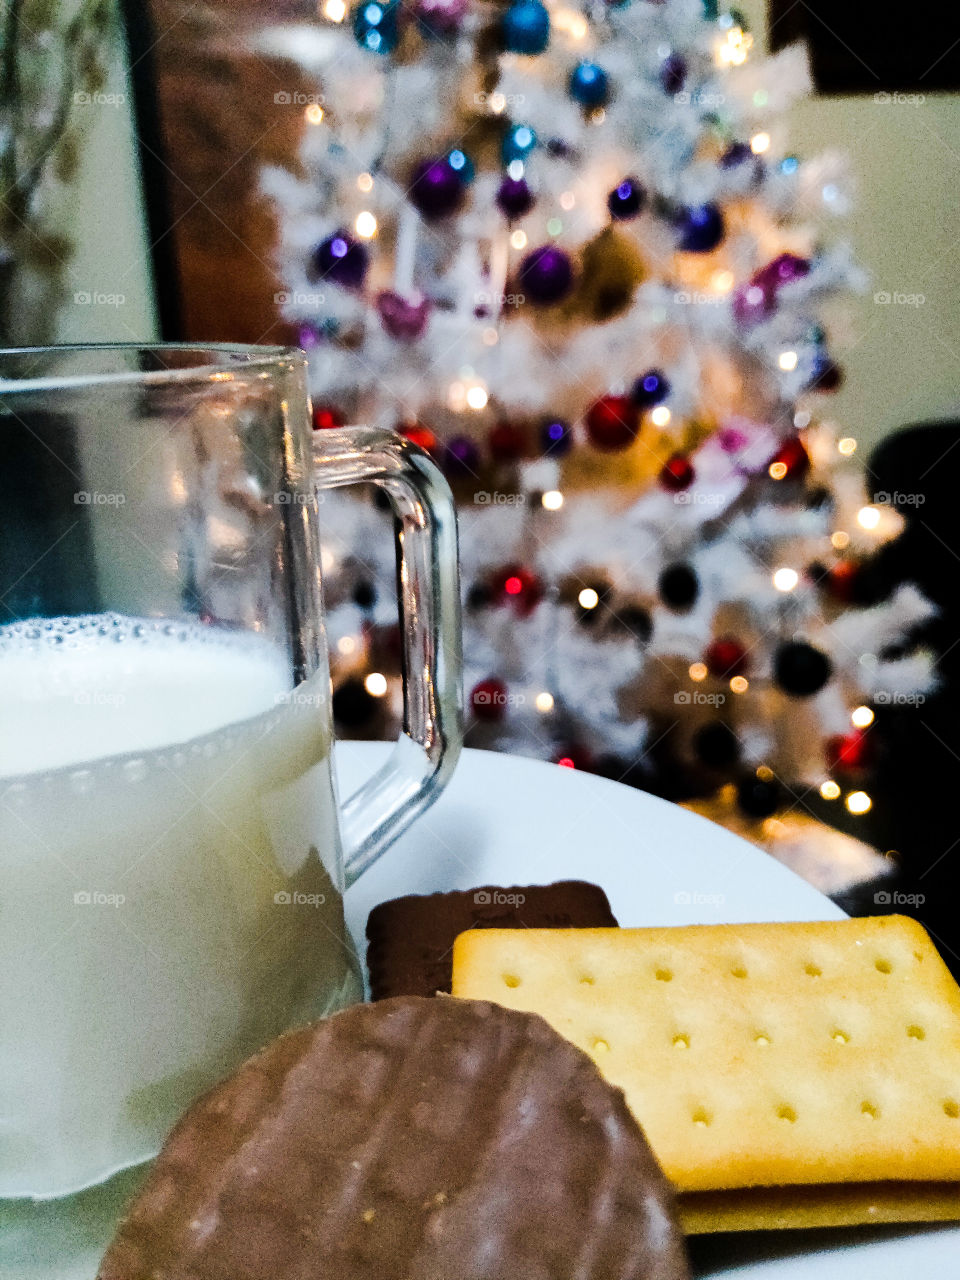 Santa's snacks!